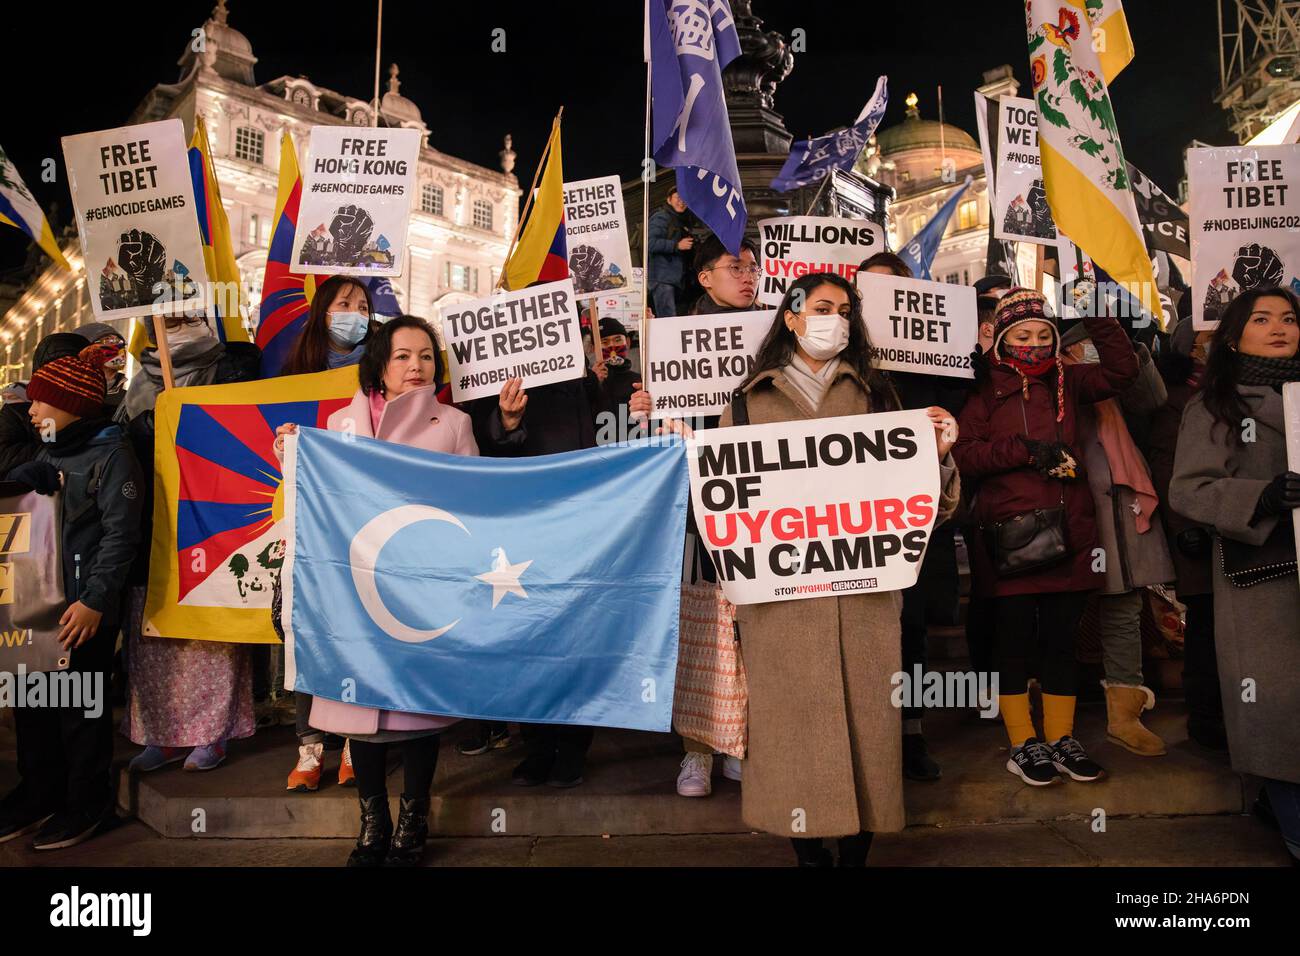 Rahima Mahmut (L), directeur britannique du Congrès mondial Uyghur et directeur exécutif de Stop Uyghur Genocide, détient le drapeau Uyghur tandis que d'autres manifestants élèvent leurs pancartes lors d'une manifestation.Plusieurs communautés anti-chinoises du Parti communiste (anti-PCC) à Londres se sont ralliées à Piccadilly Circus, puis ont défilé au 10 Downing Street.Les Hongkongais, les Tibétains et les Ouïgours se sont réunis pour condamner les tentatives du PCC d'opprimer les voix dissidentes.Les manifestants ont également demandé au monde occidental de boycotter les Jeux olympiques d'hiver de 2022 à Beijing en réponse à la répression des droits de l'homme en Chine.(Photo par H Banque D'Images